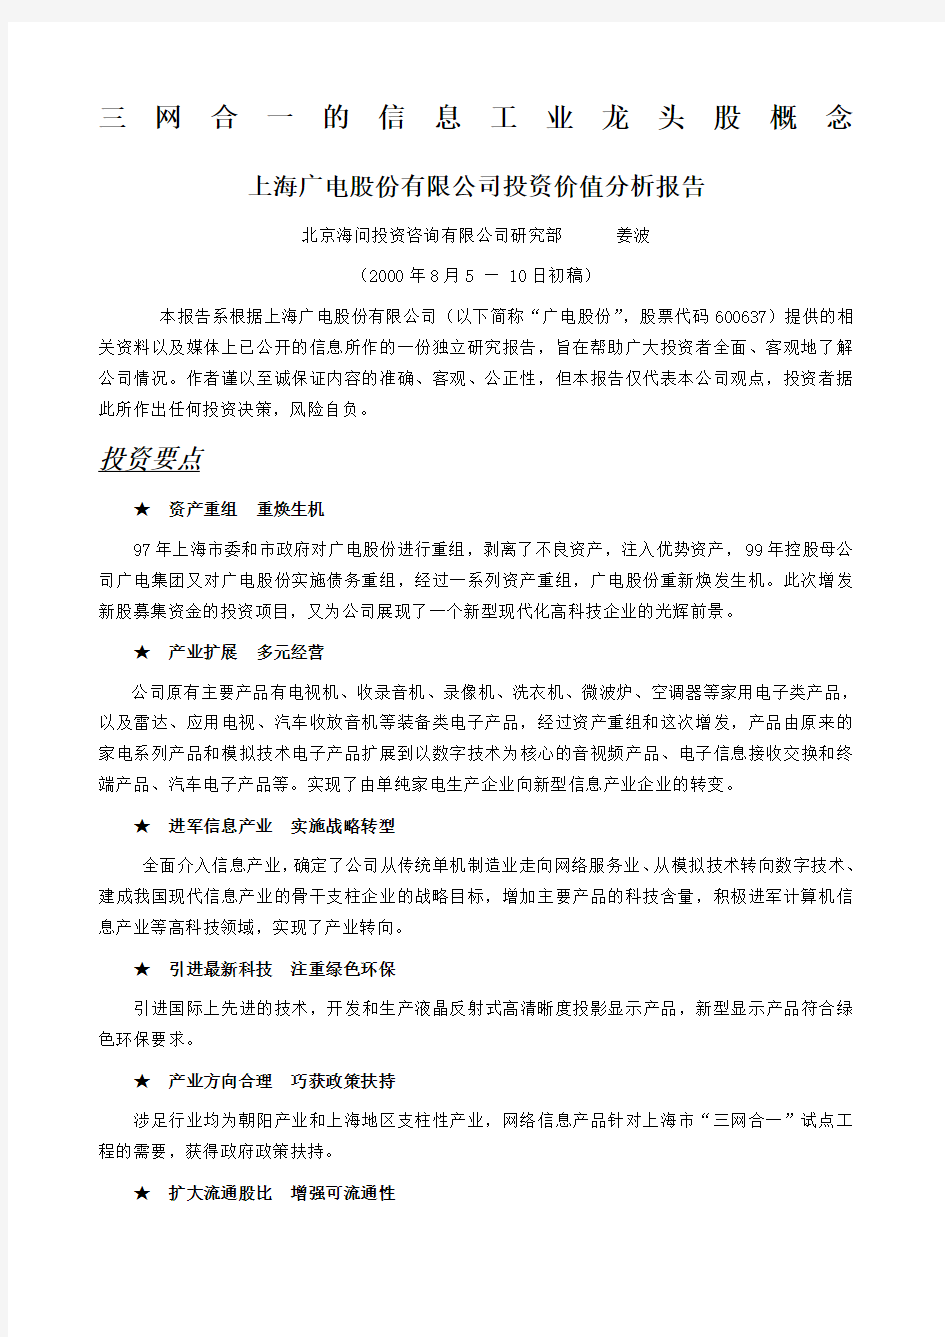 上海广电股份公司投资价值分析报告